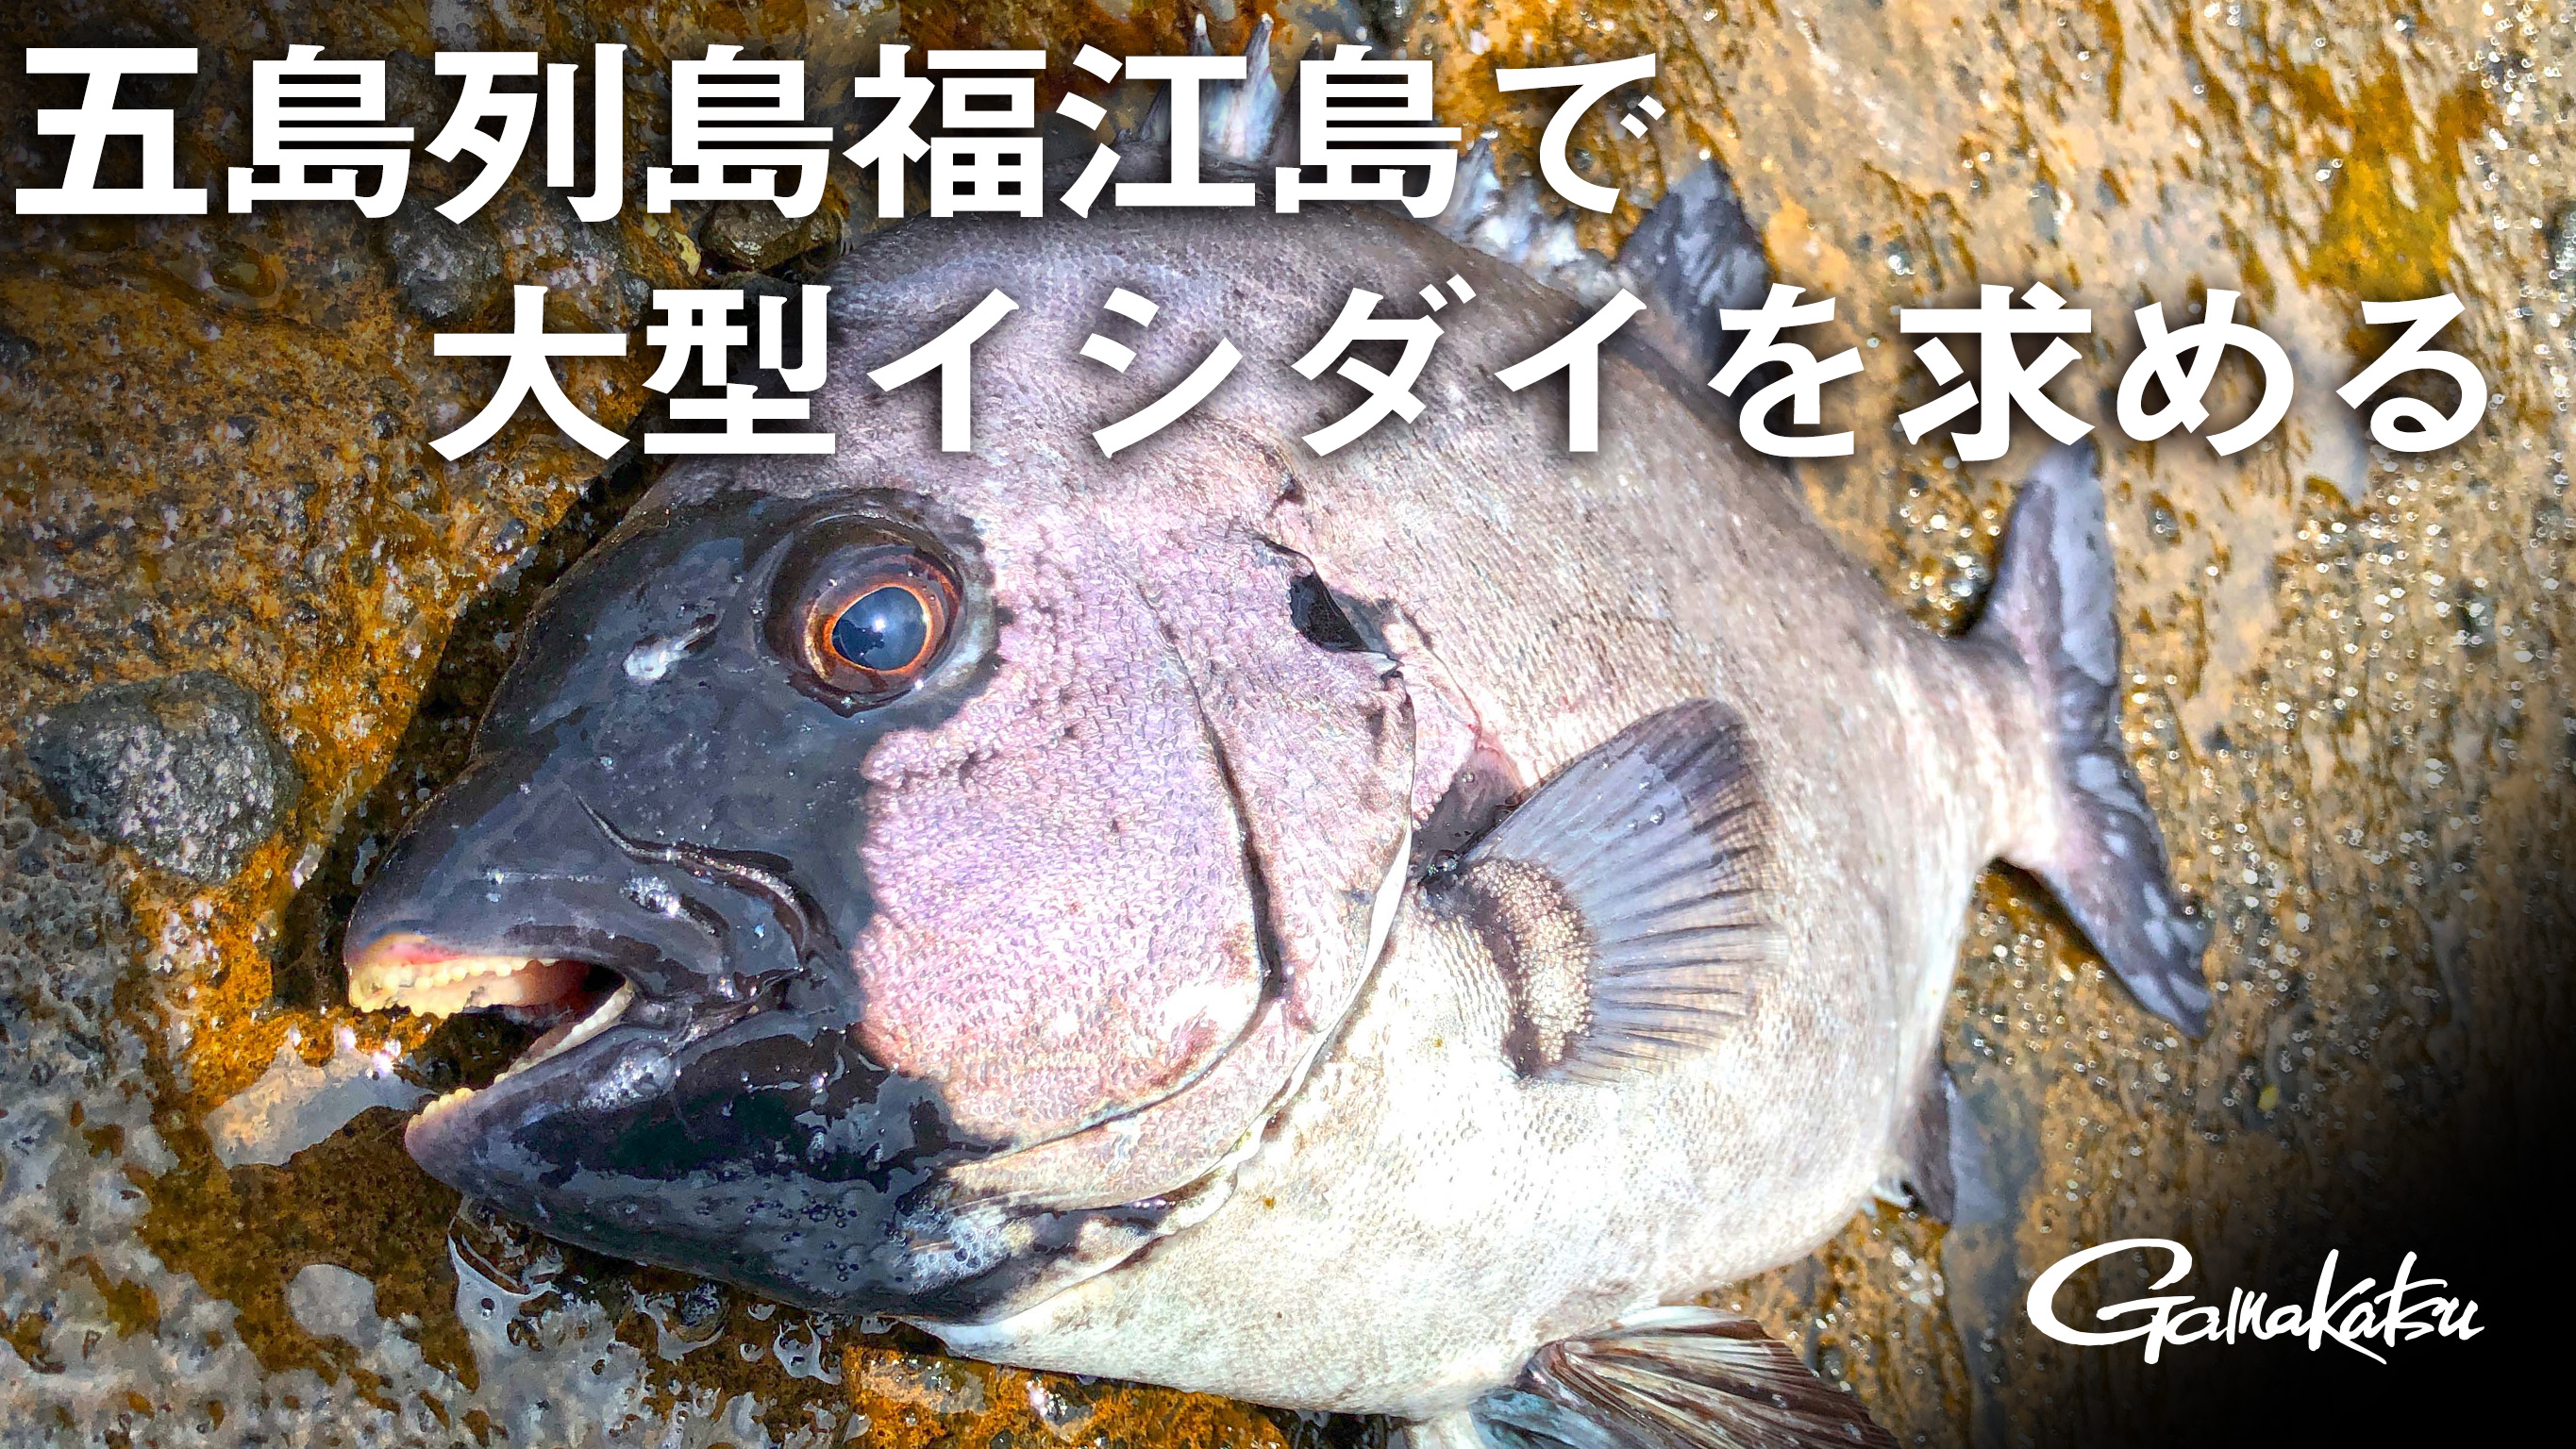 G WORLD】#10五島列島福江島で大型イシダイを求める | がまかつ